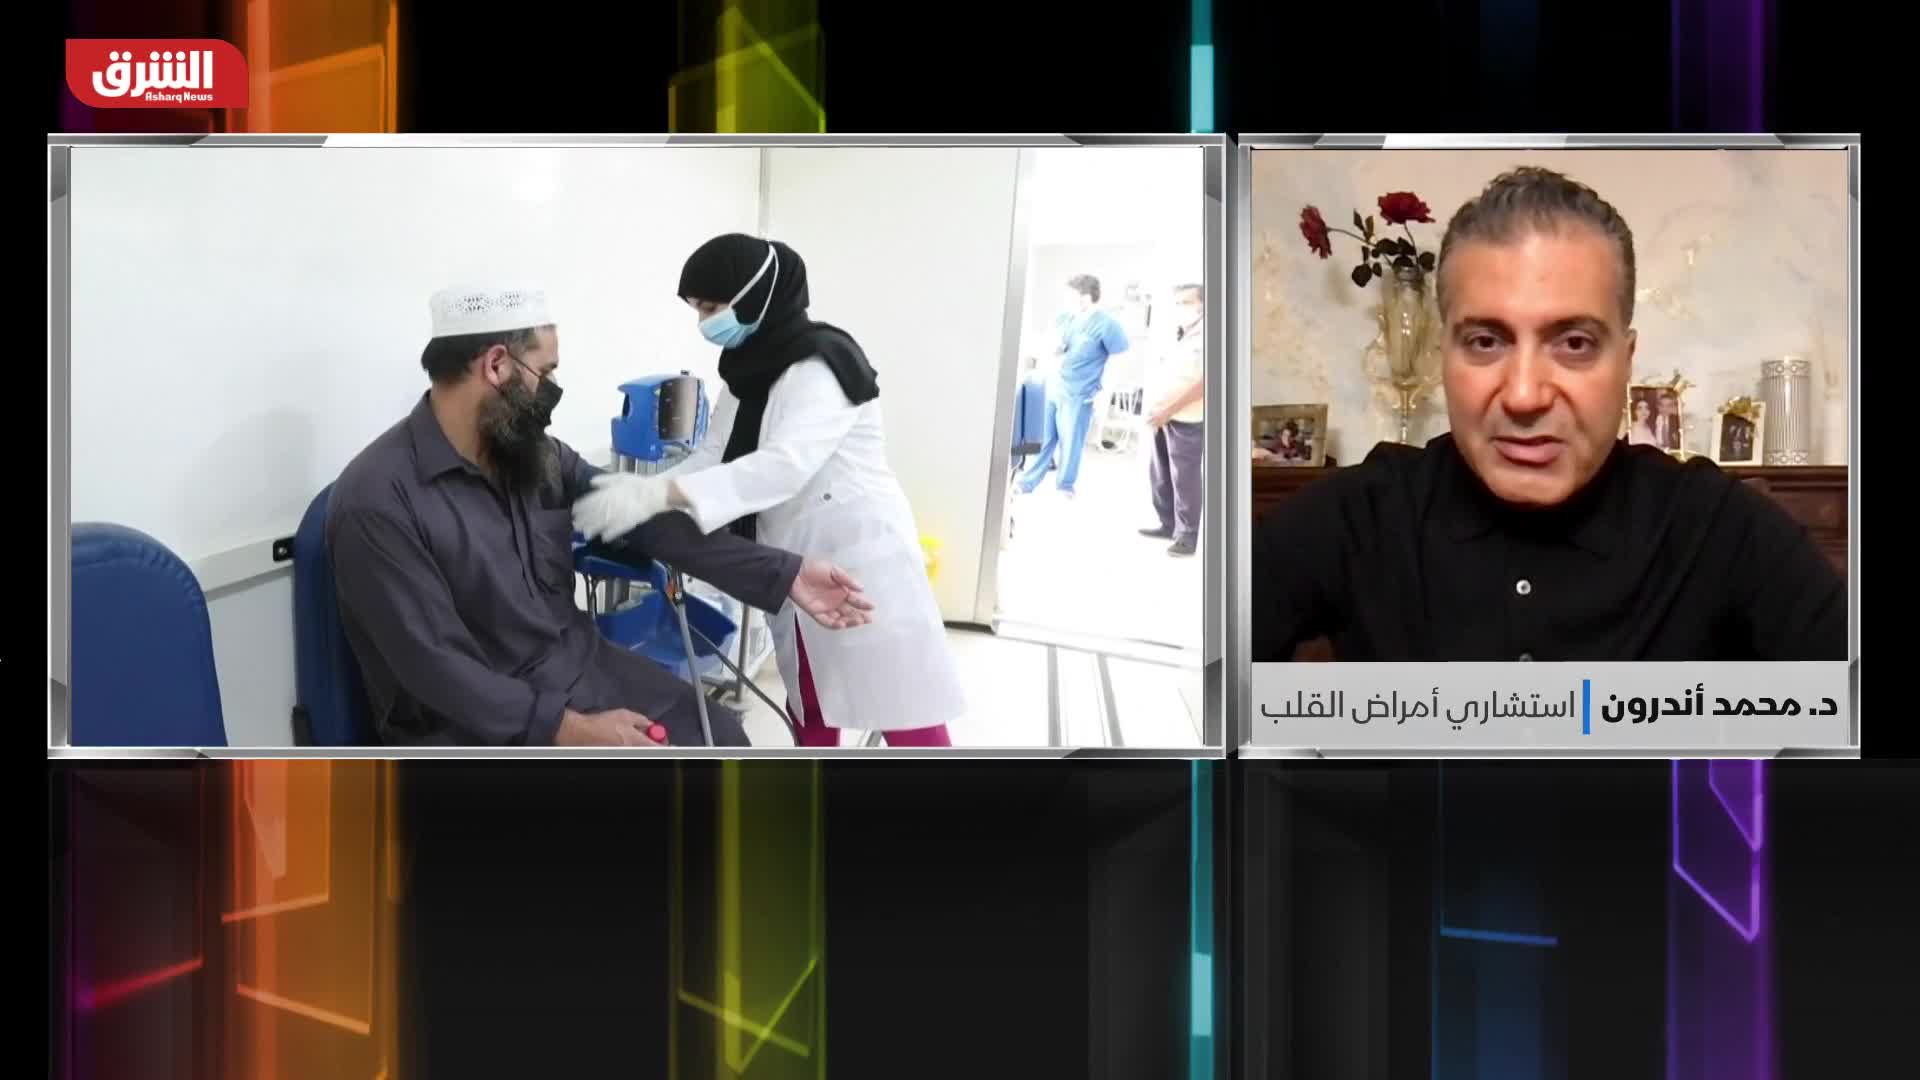 د. محمد أندرون: تمرين التنفس يقلل ارتفاع ضغط الدم بنفس فاعلية الأدوية